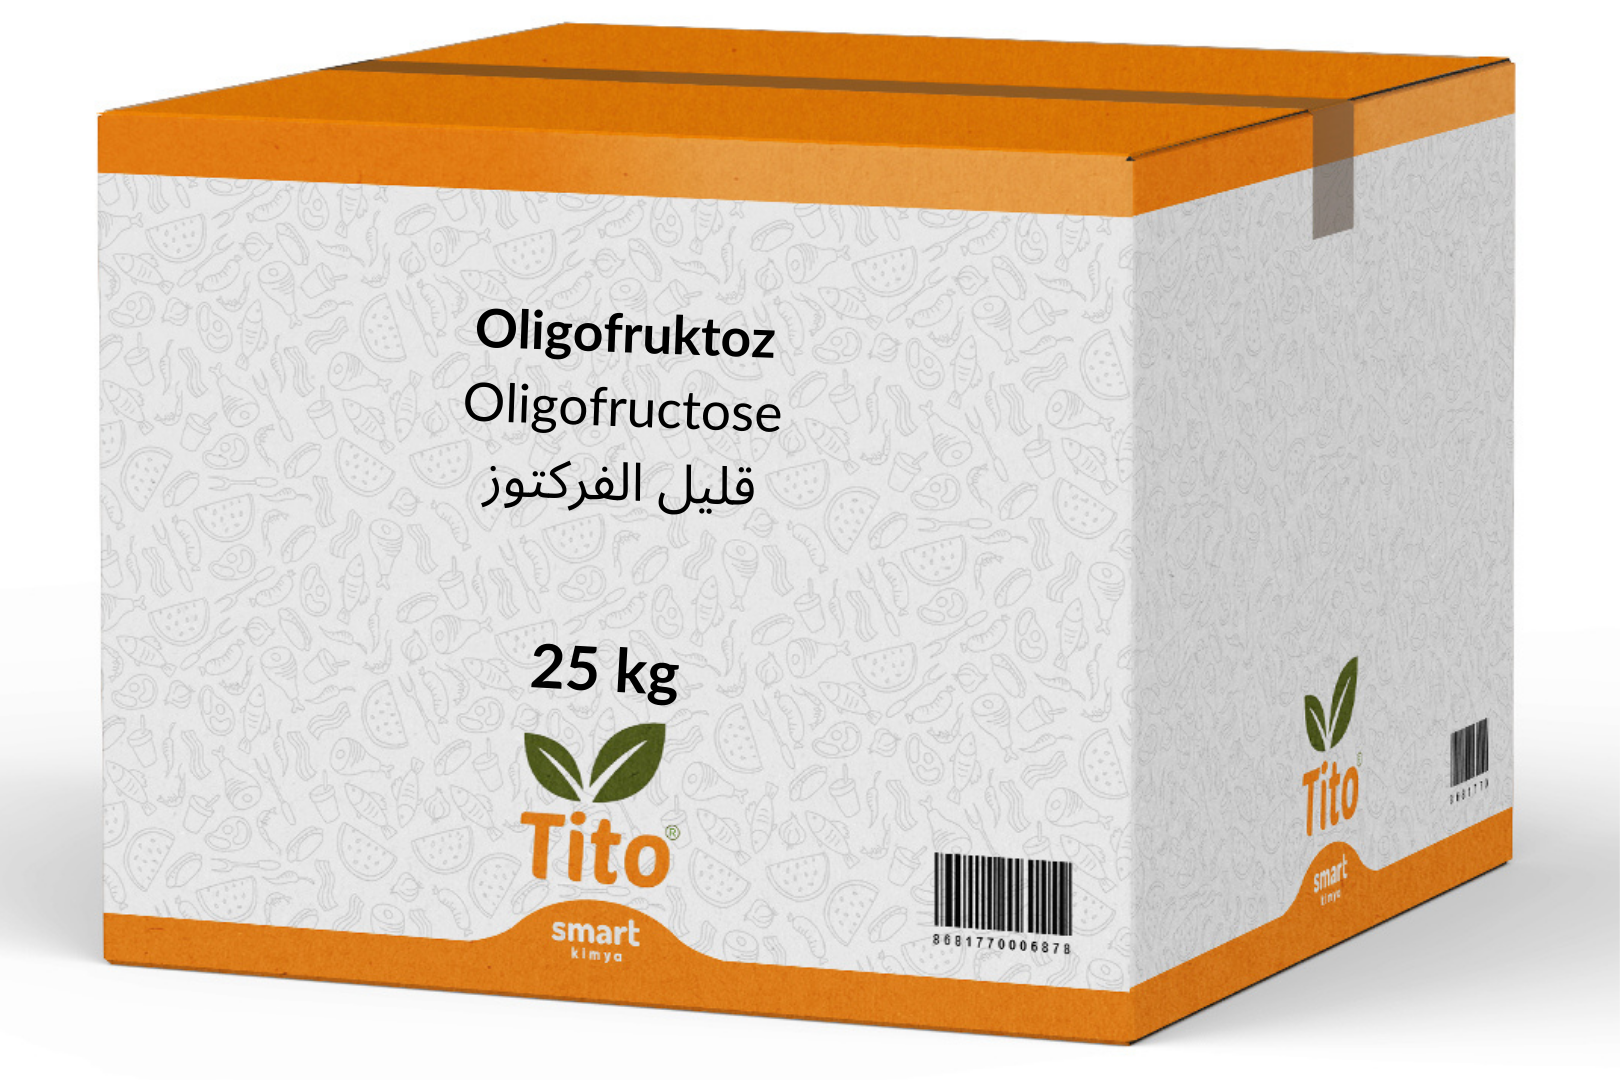 Oligofruktoz 25 kg